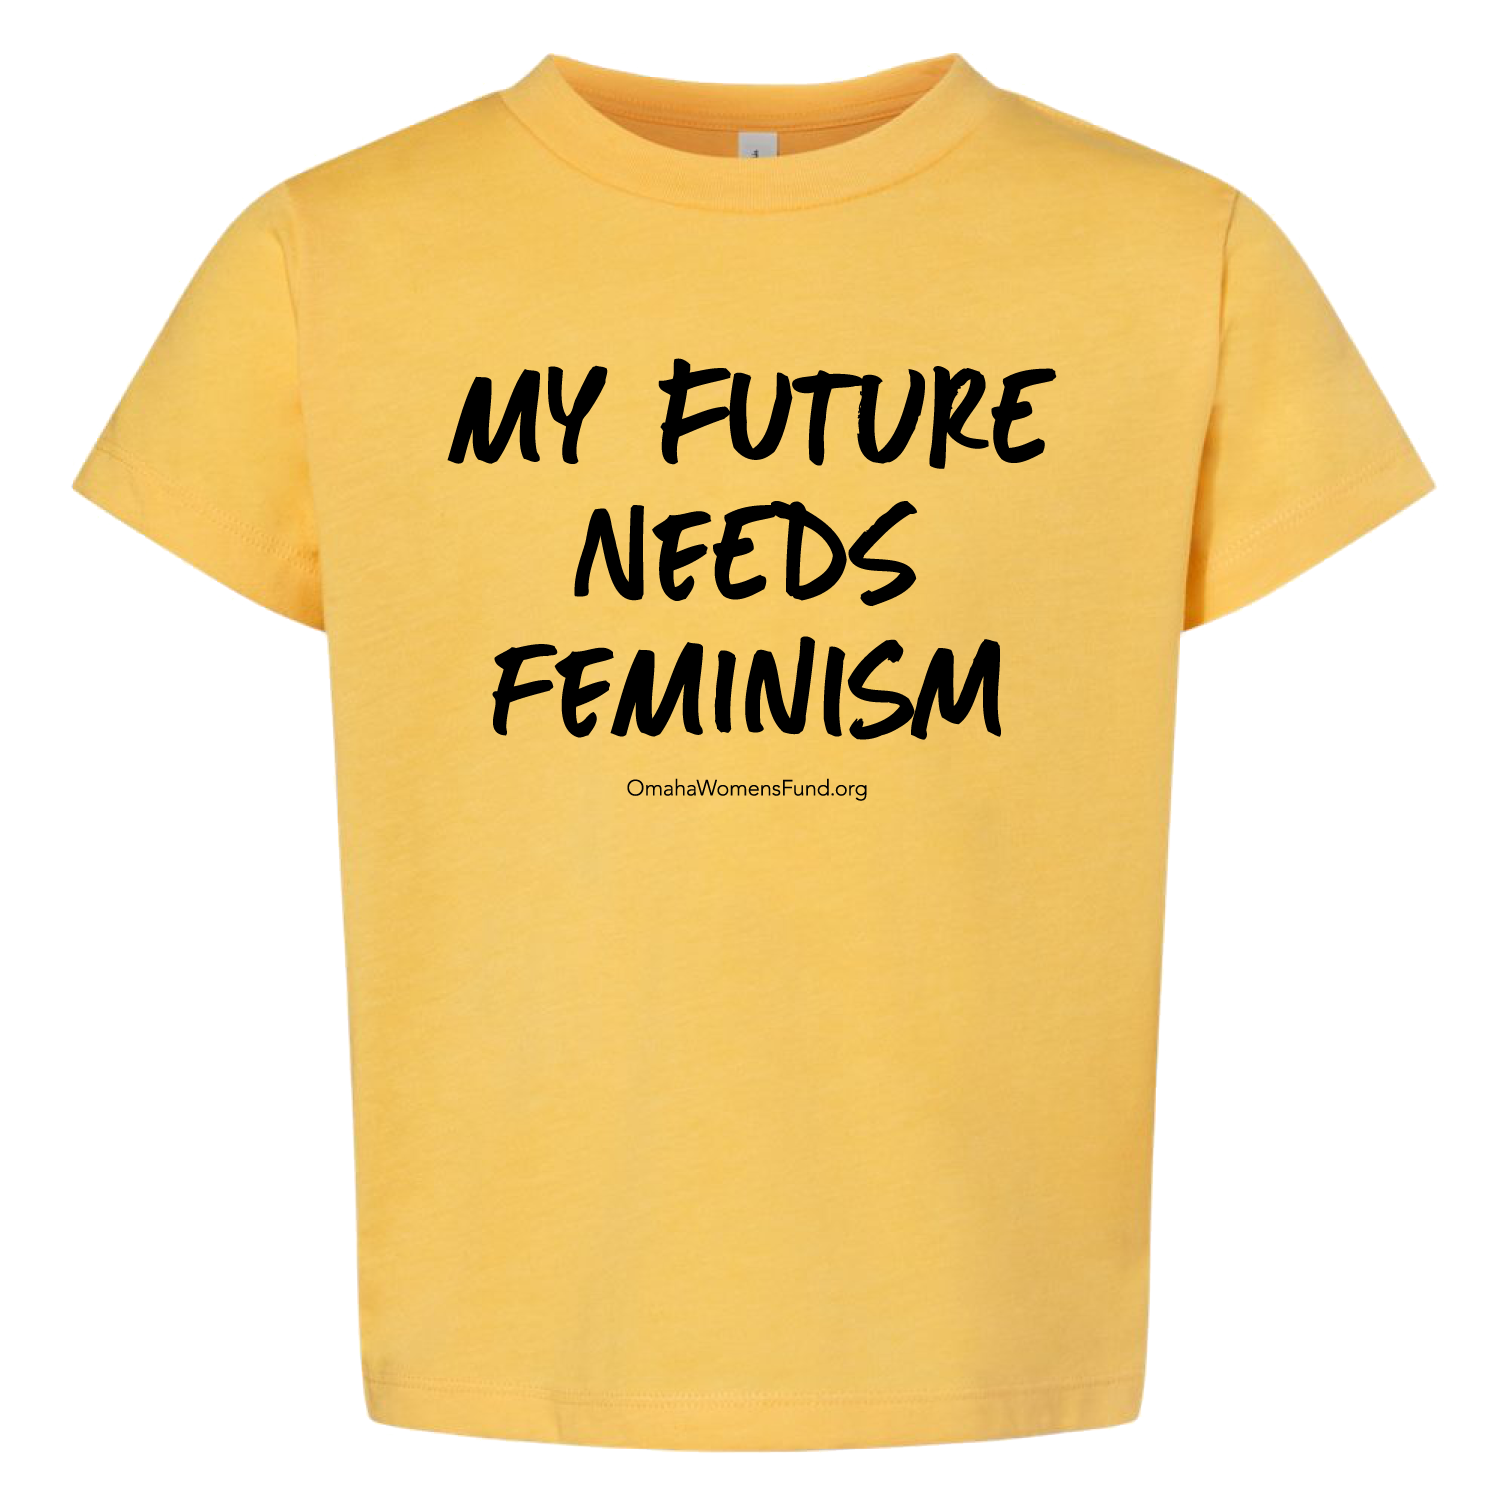 Women's Fund Of Omaha | My Future Needs Feminism Toddler T-Shirt - Yellow